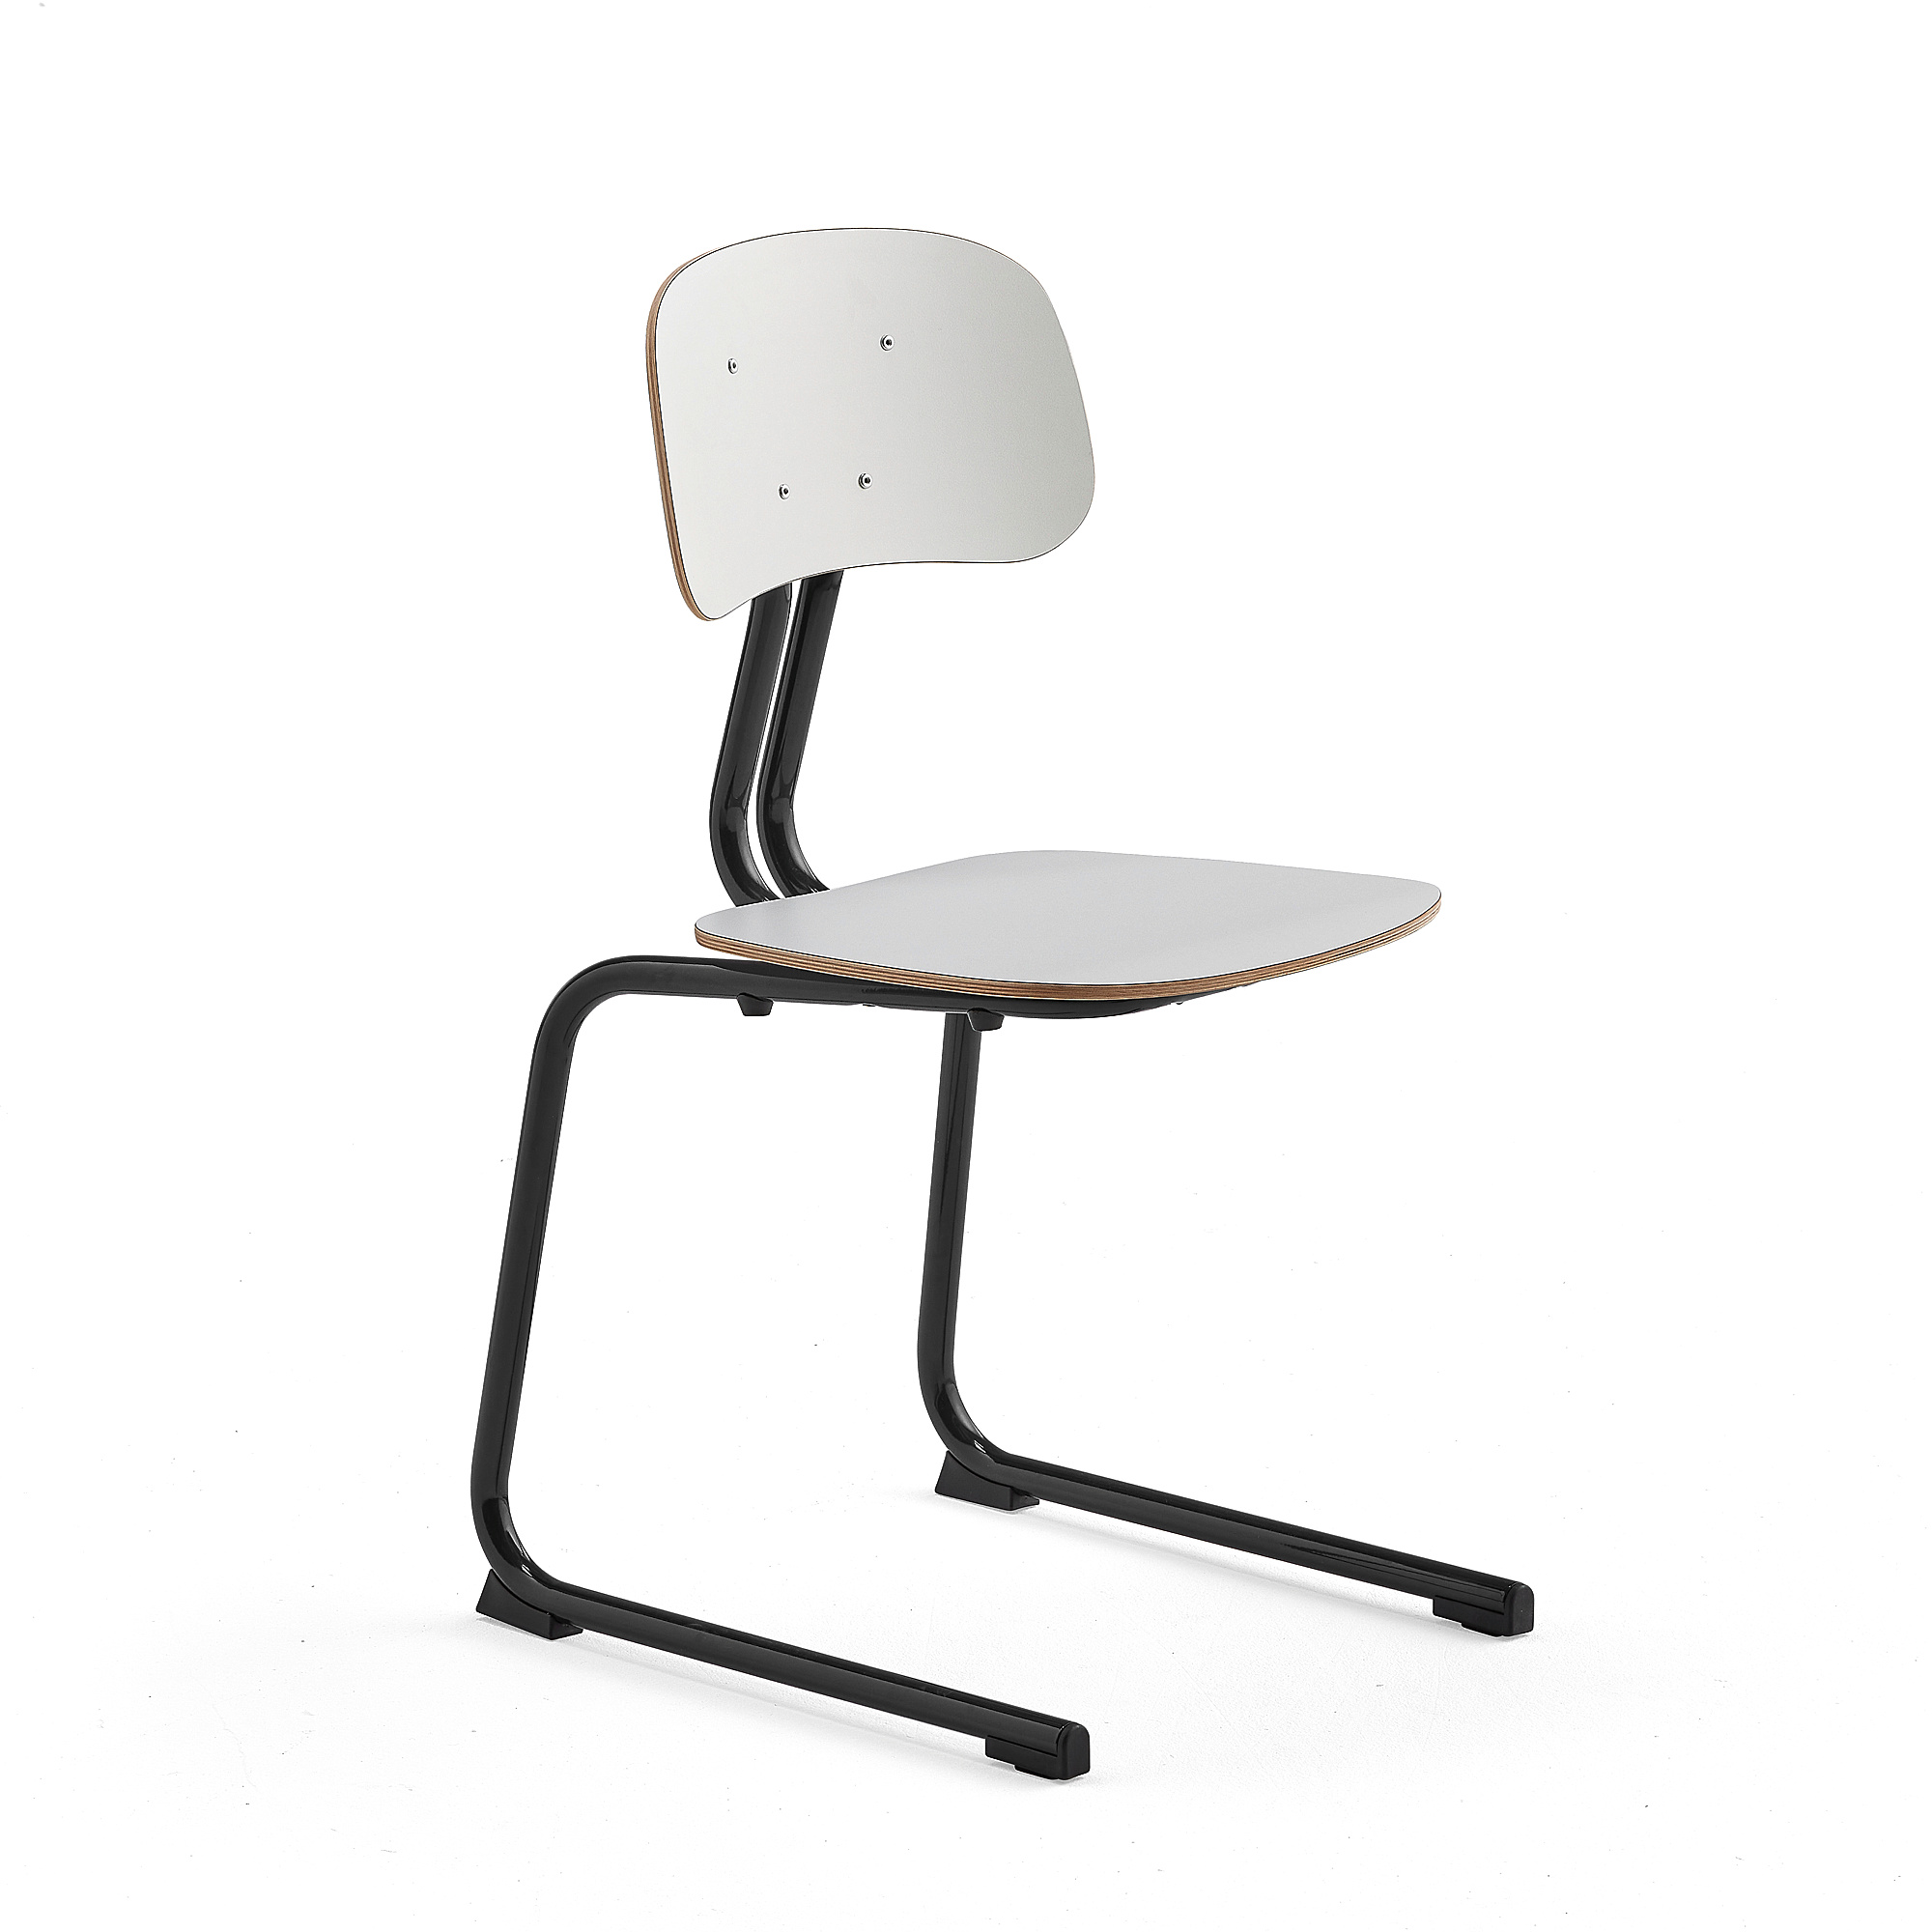 Školní židle YNGVE, ližinová podnož, výška 460 mm, antracitově šedá/bílá